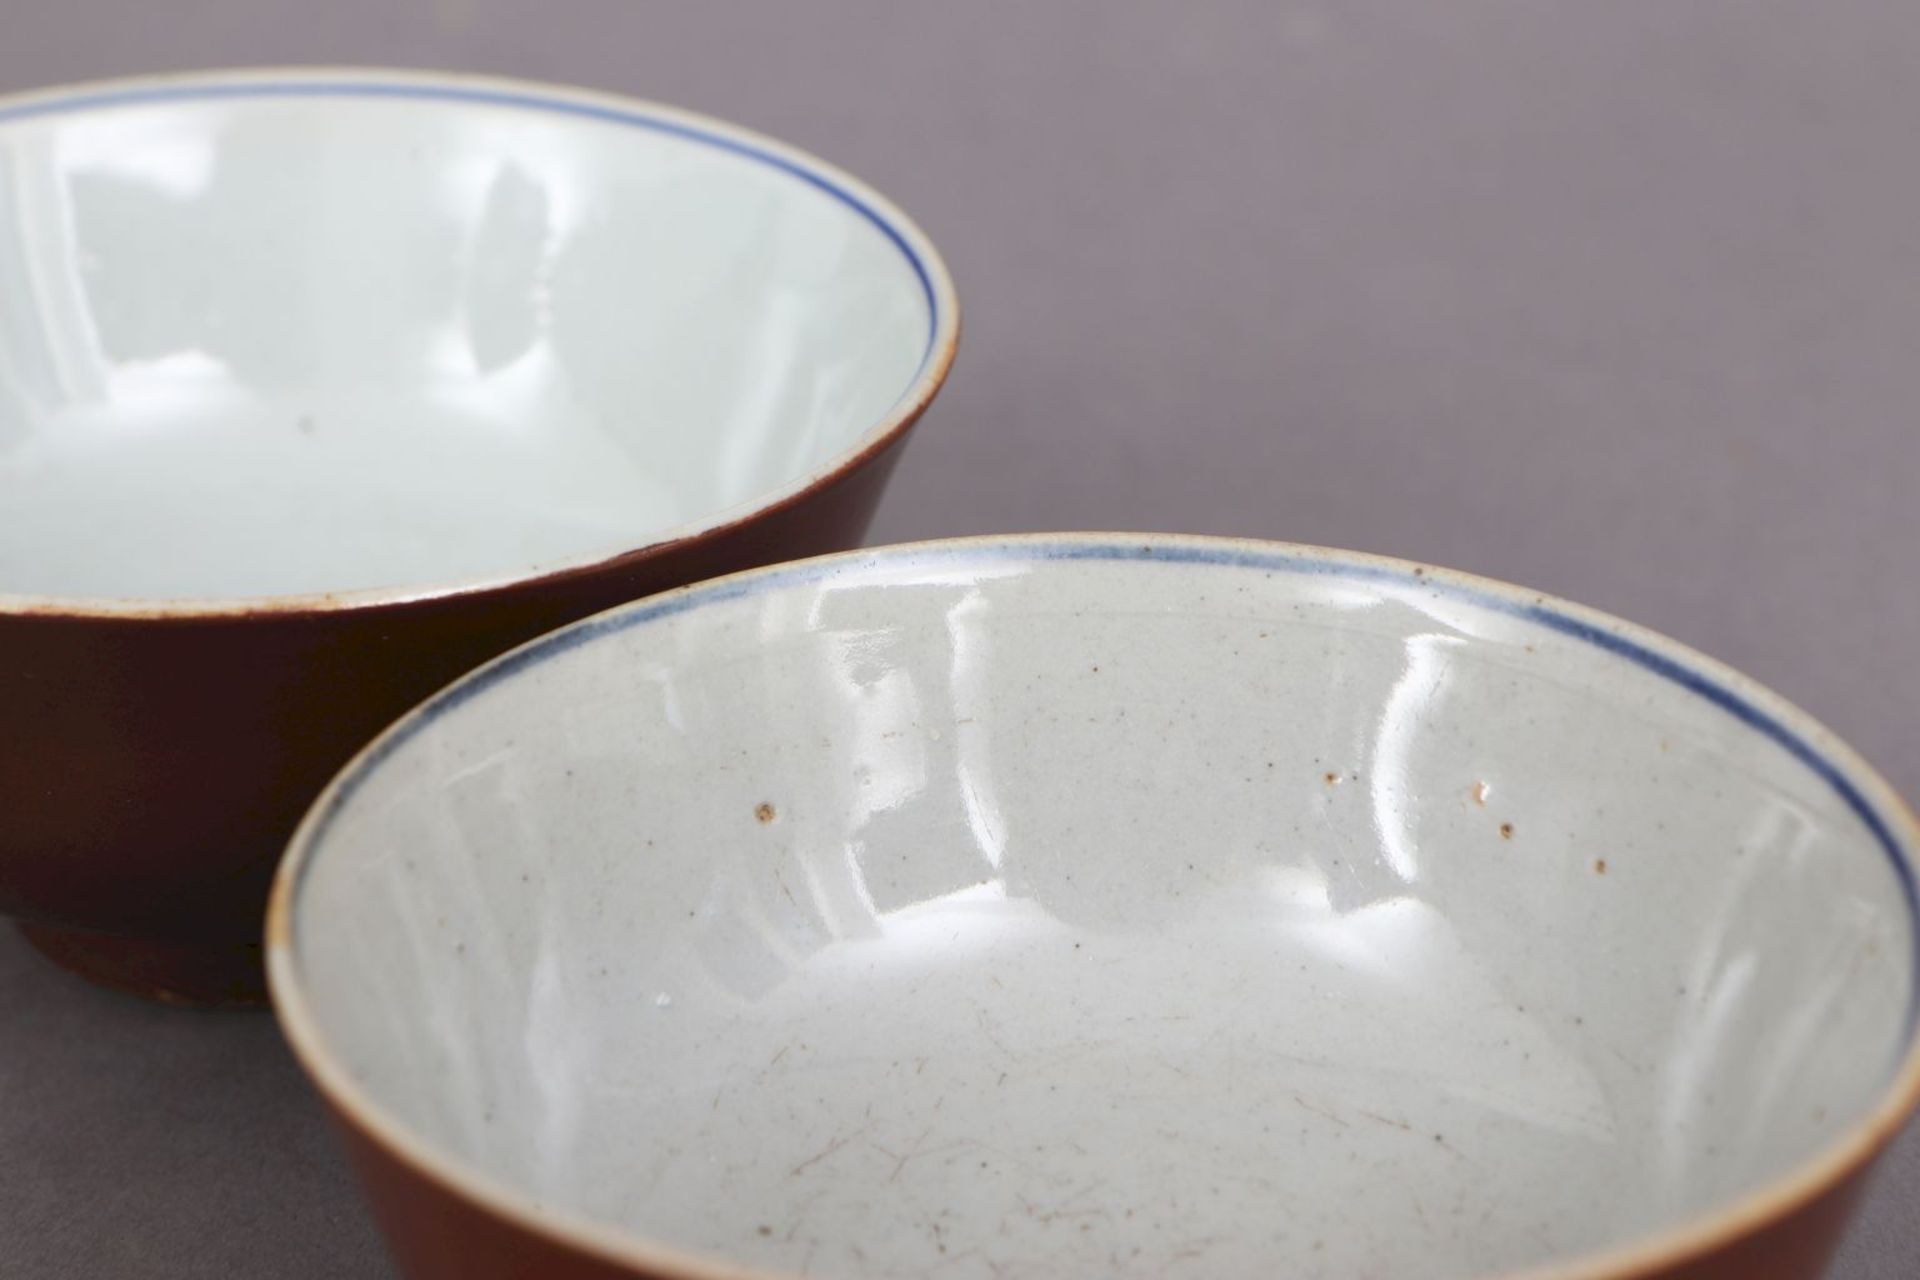 2 chinesische Porzellan-Koppchen mit café-au-lait GlasurChina, 18./19. Jhdt., runde, tiefe Sch - Bild 2 aus 3